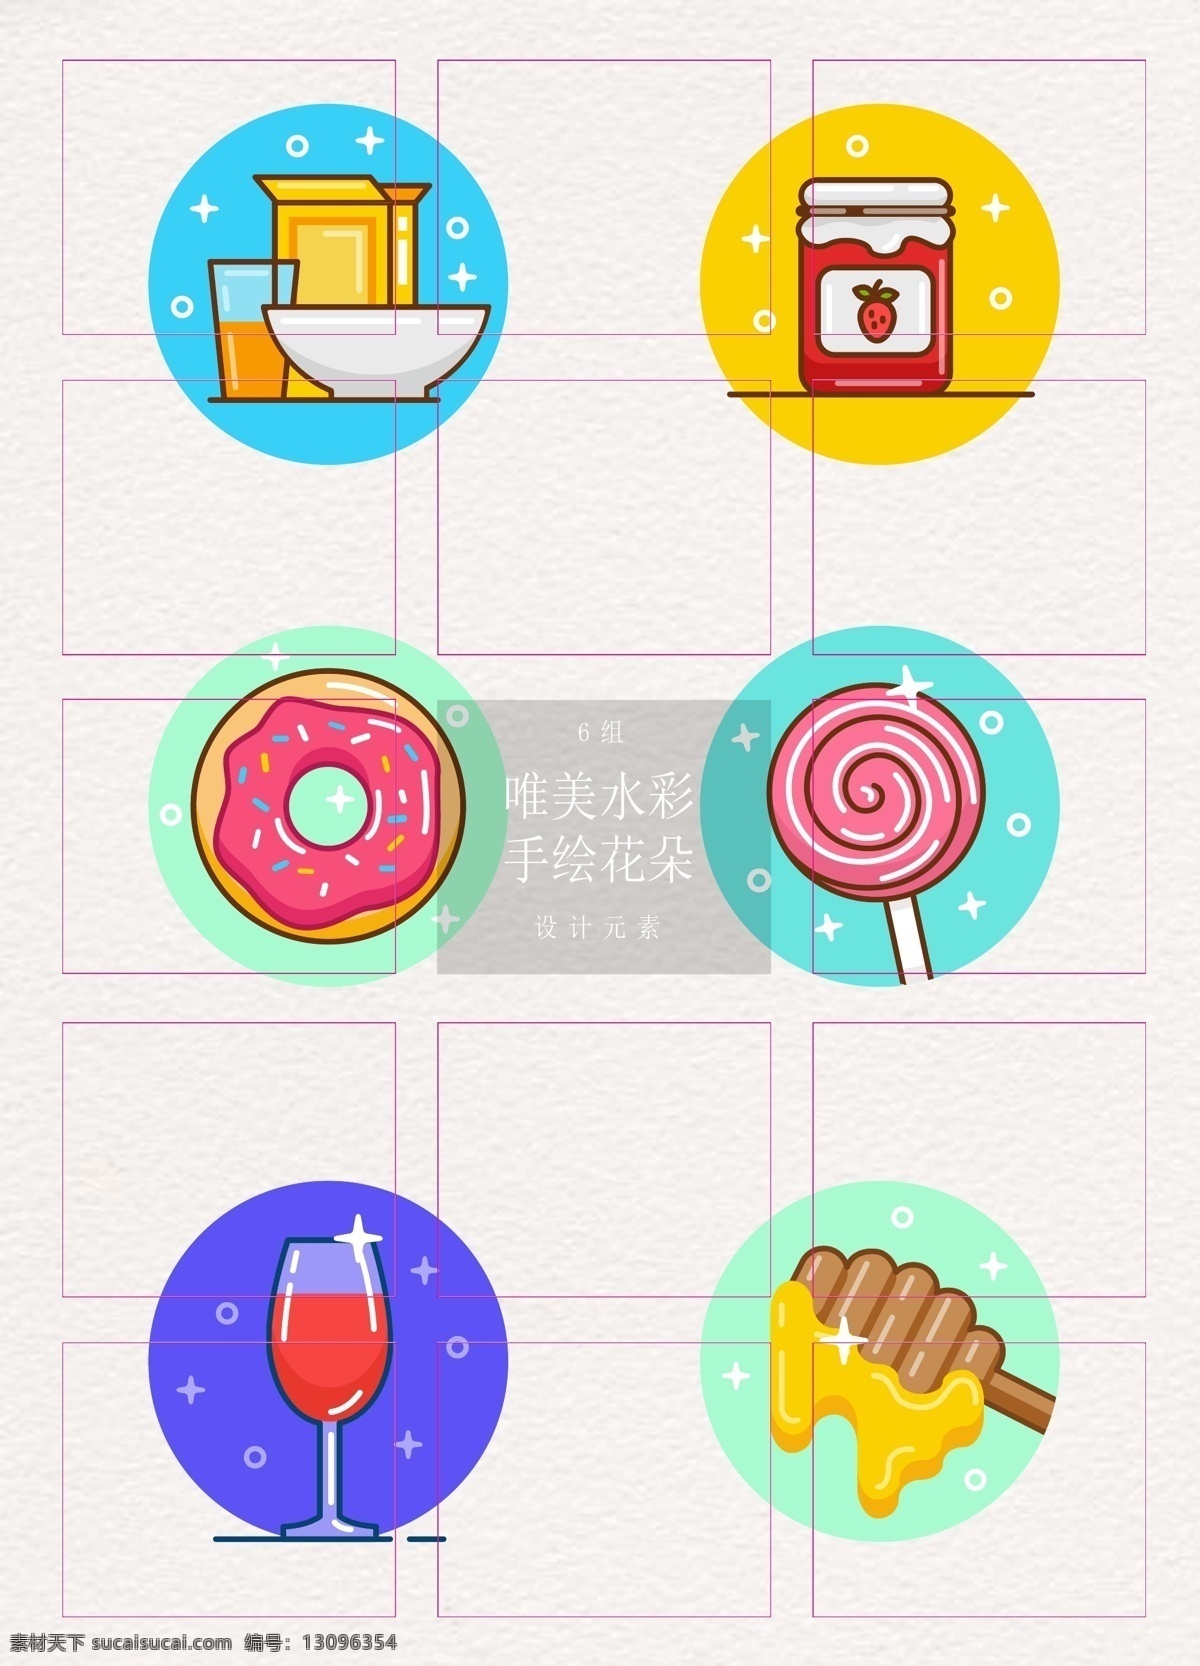 mbe 可爱 甜点 食物 图标 卡通 早餐 棒棒糖 红酒 矢量 图标设计 果酱 甜甜圈 蜂蜜搅拌棒